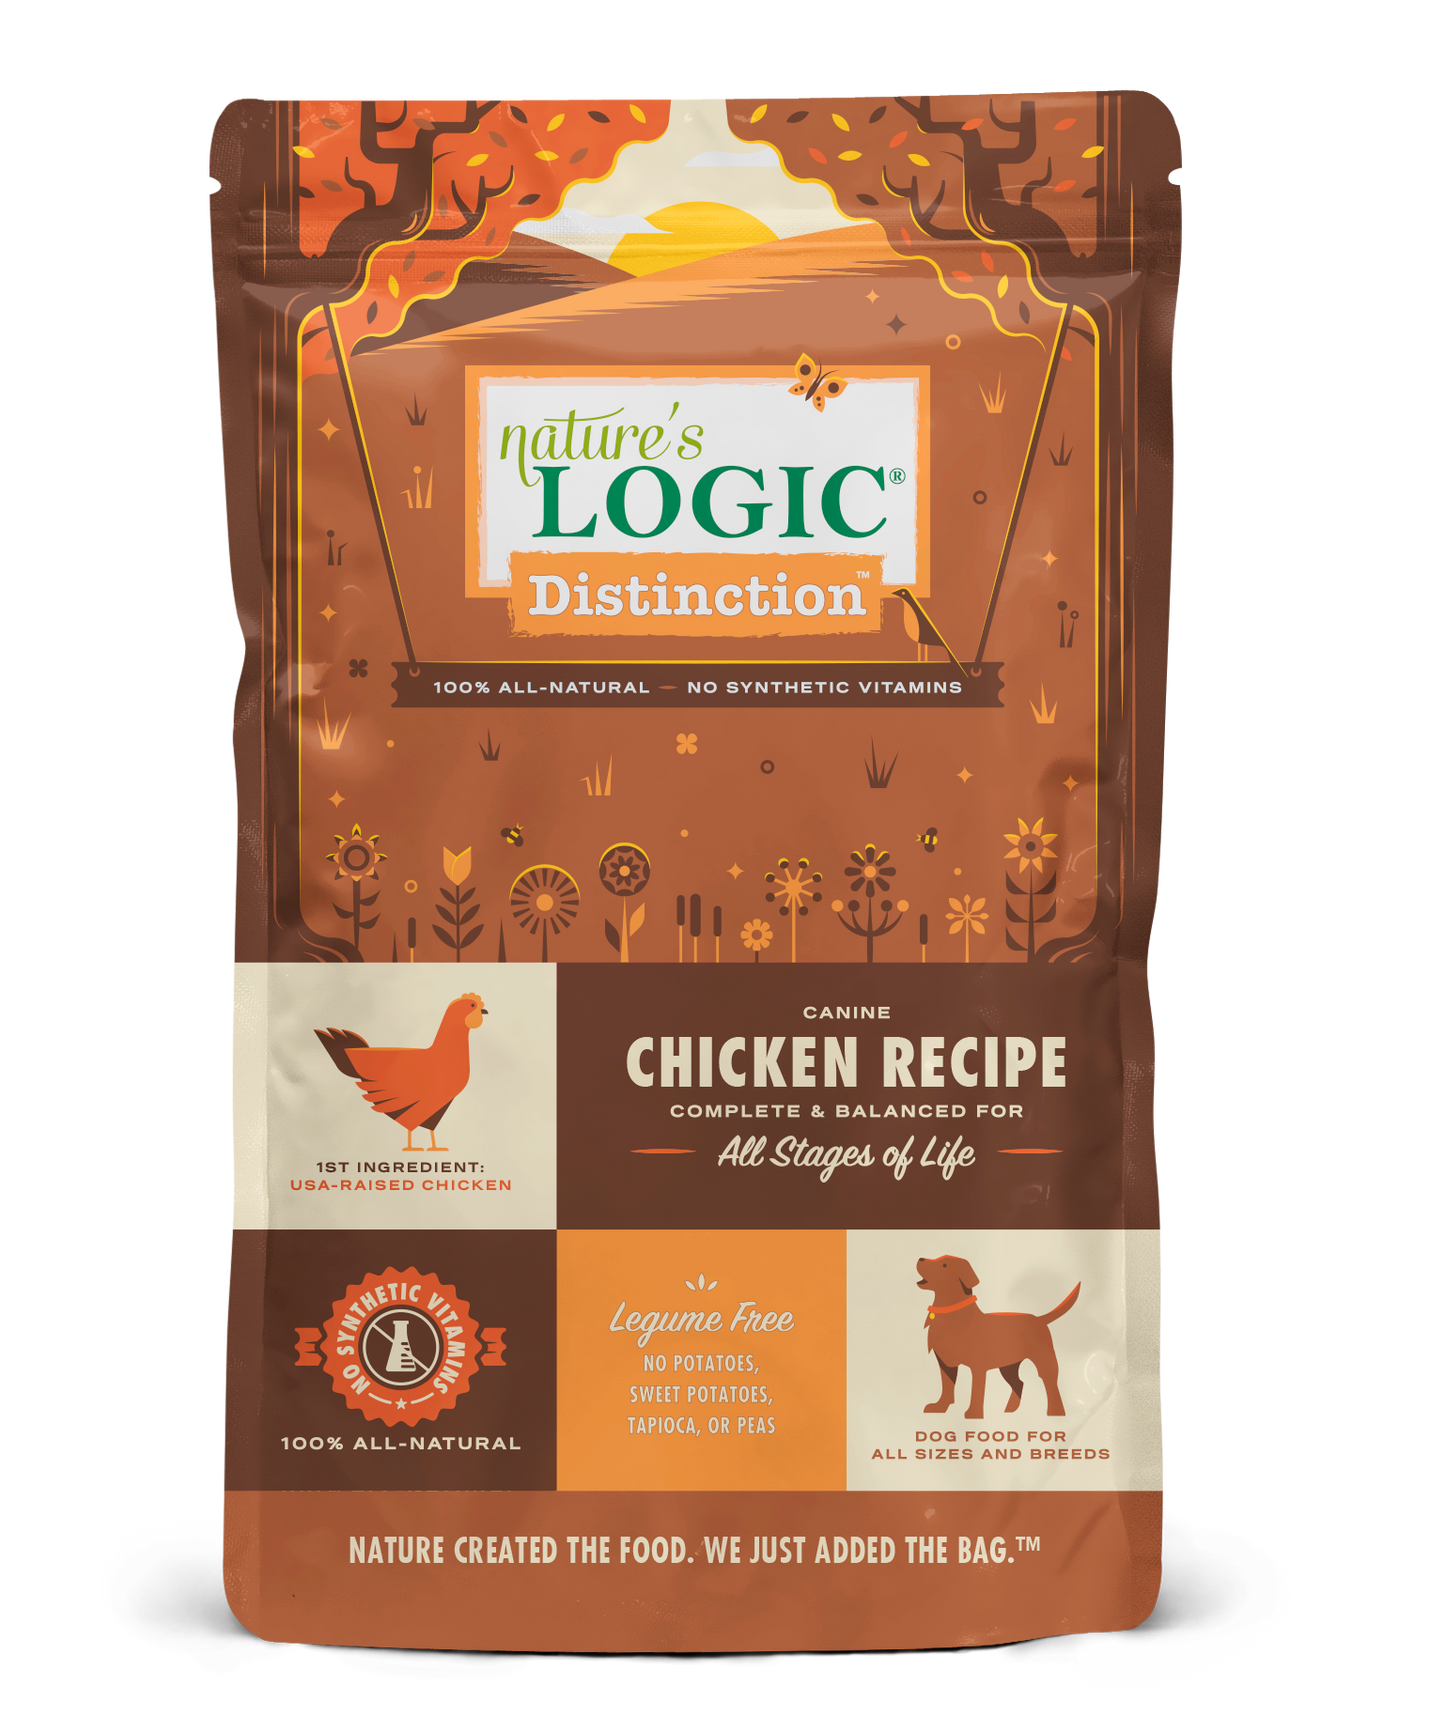 Nature's Logic Distinction Chicken